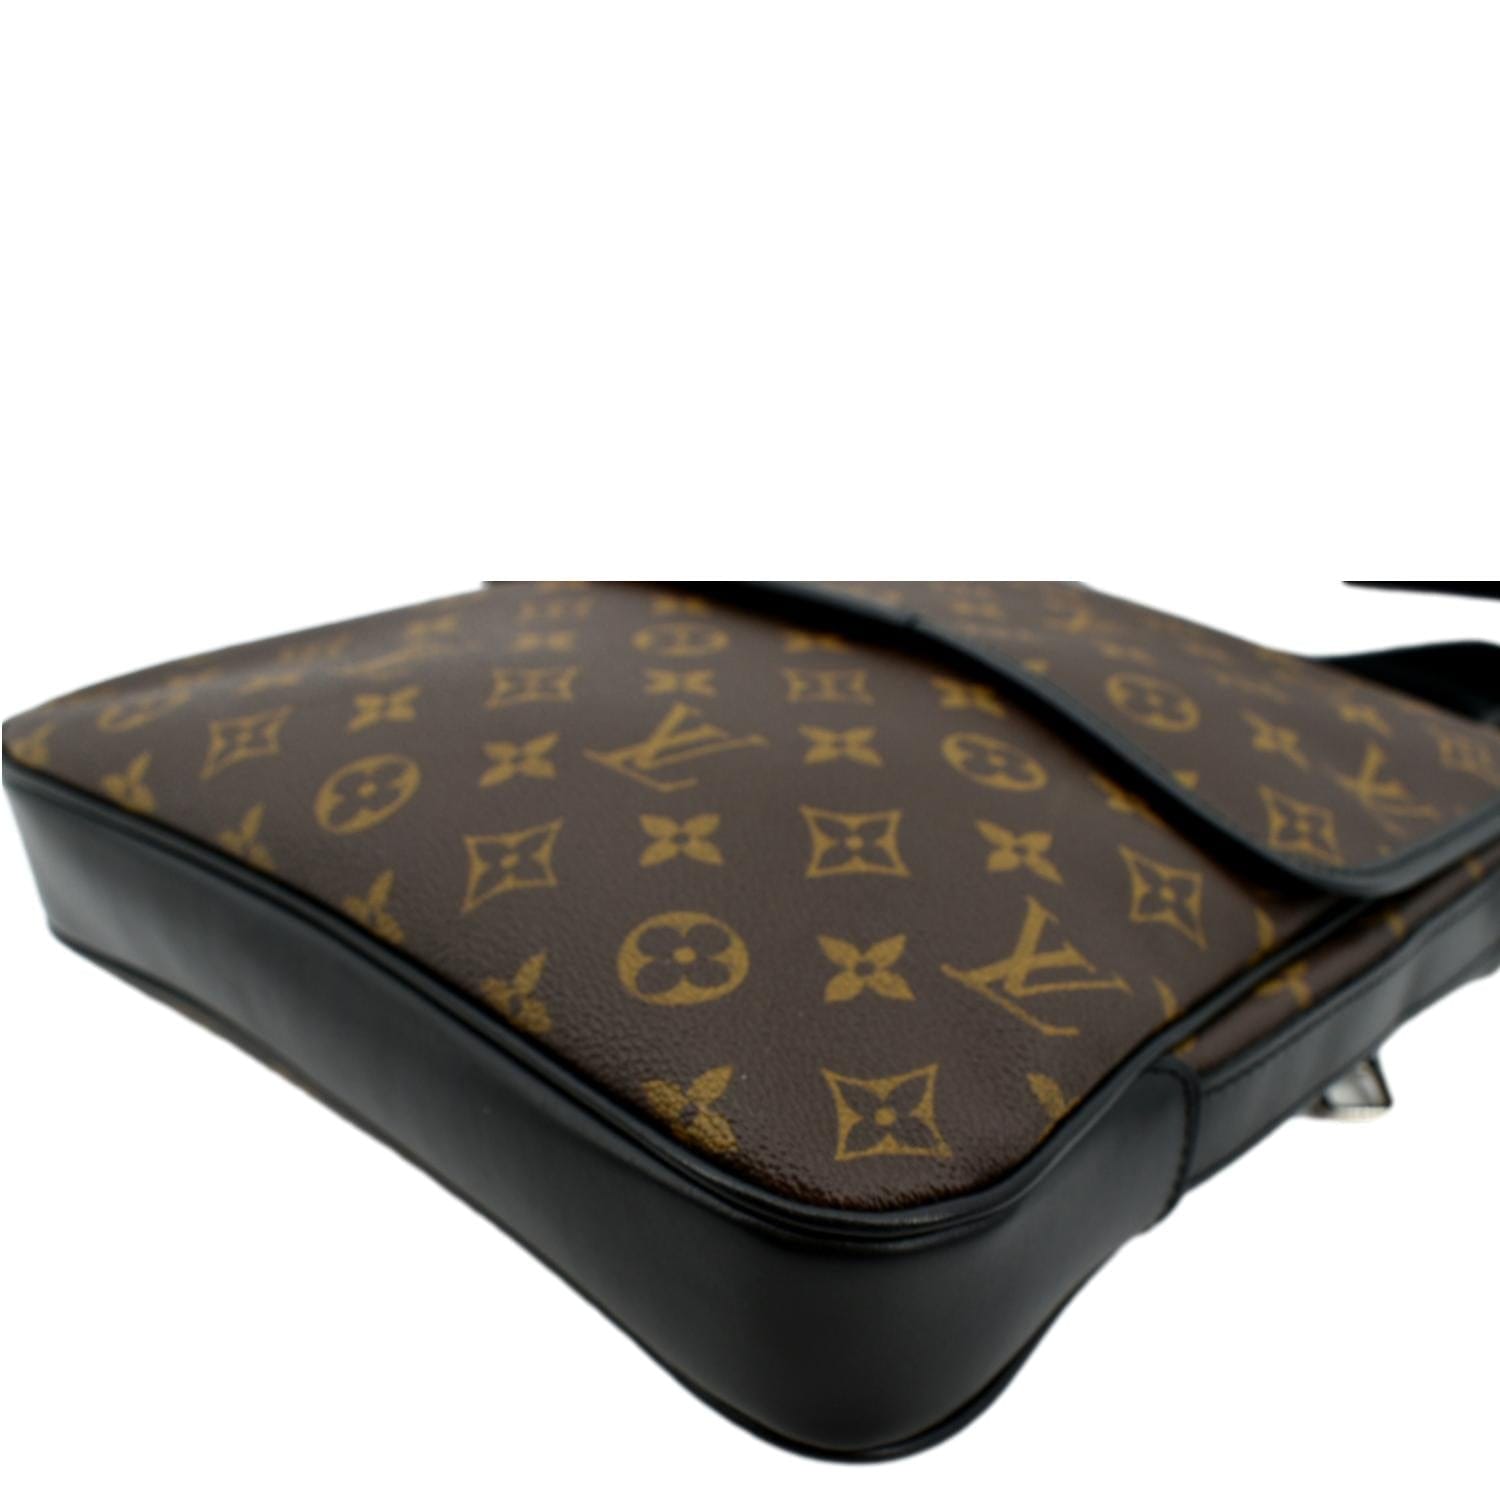 Louis Vuitton Monogram Macassar Bass MM - Brown Messenger Bags